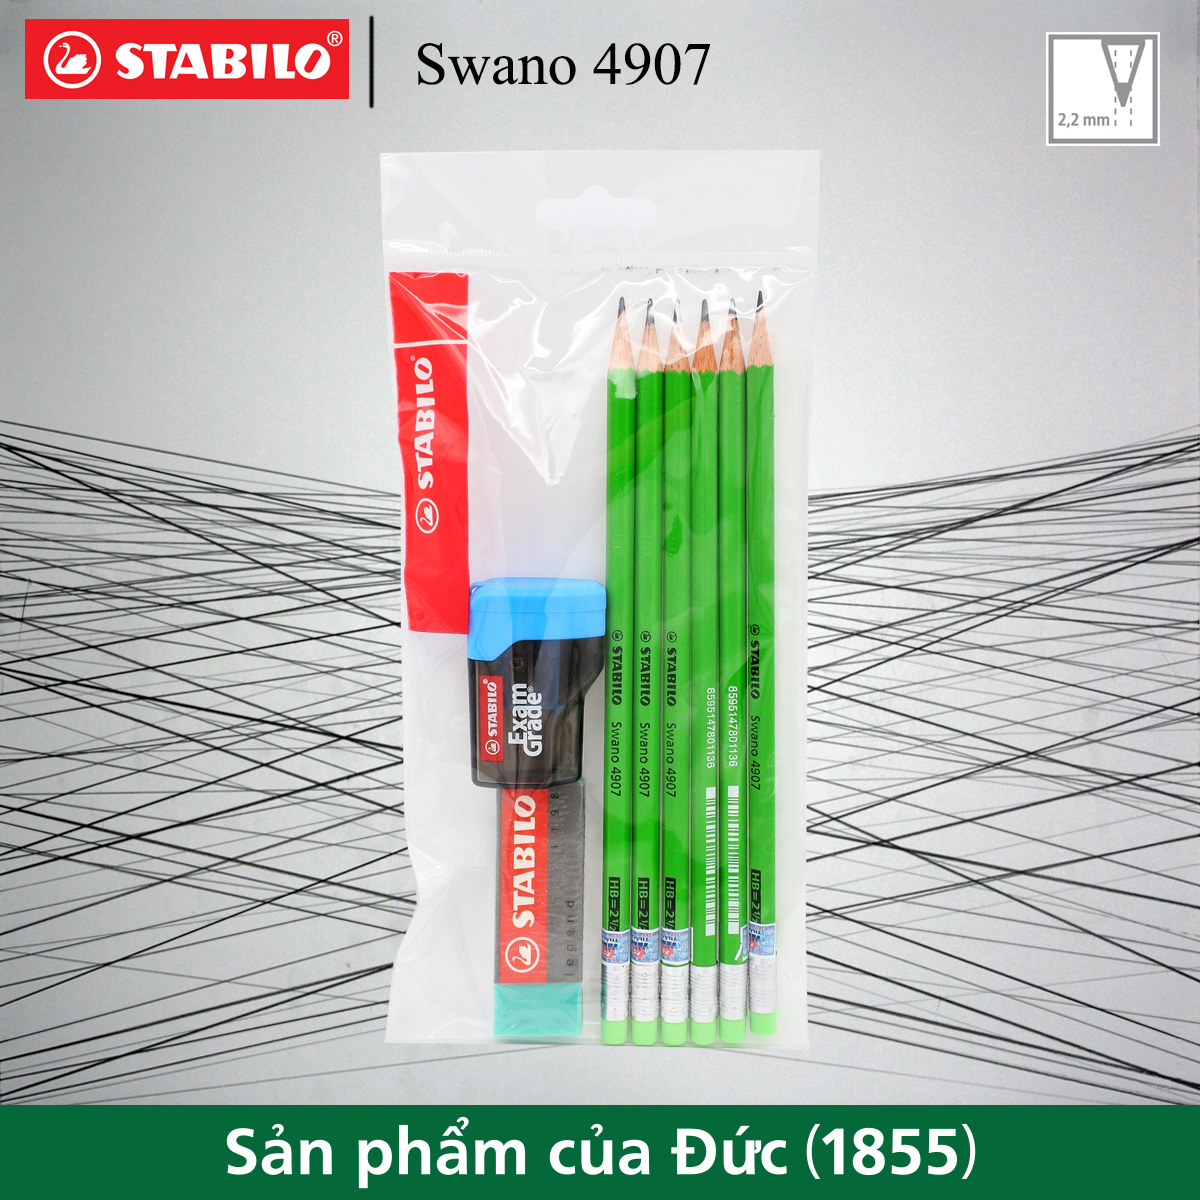 Bộ 6 bút chì gỗ STABILO Swano 4907 HB thân neon, có tẩy